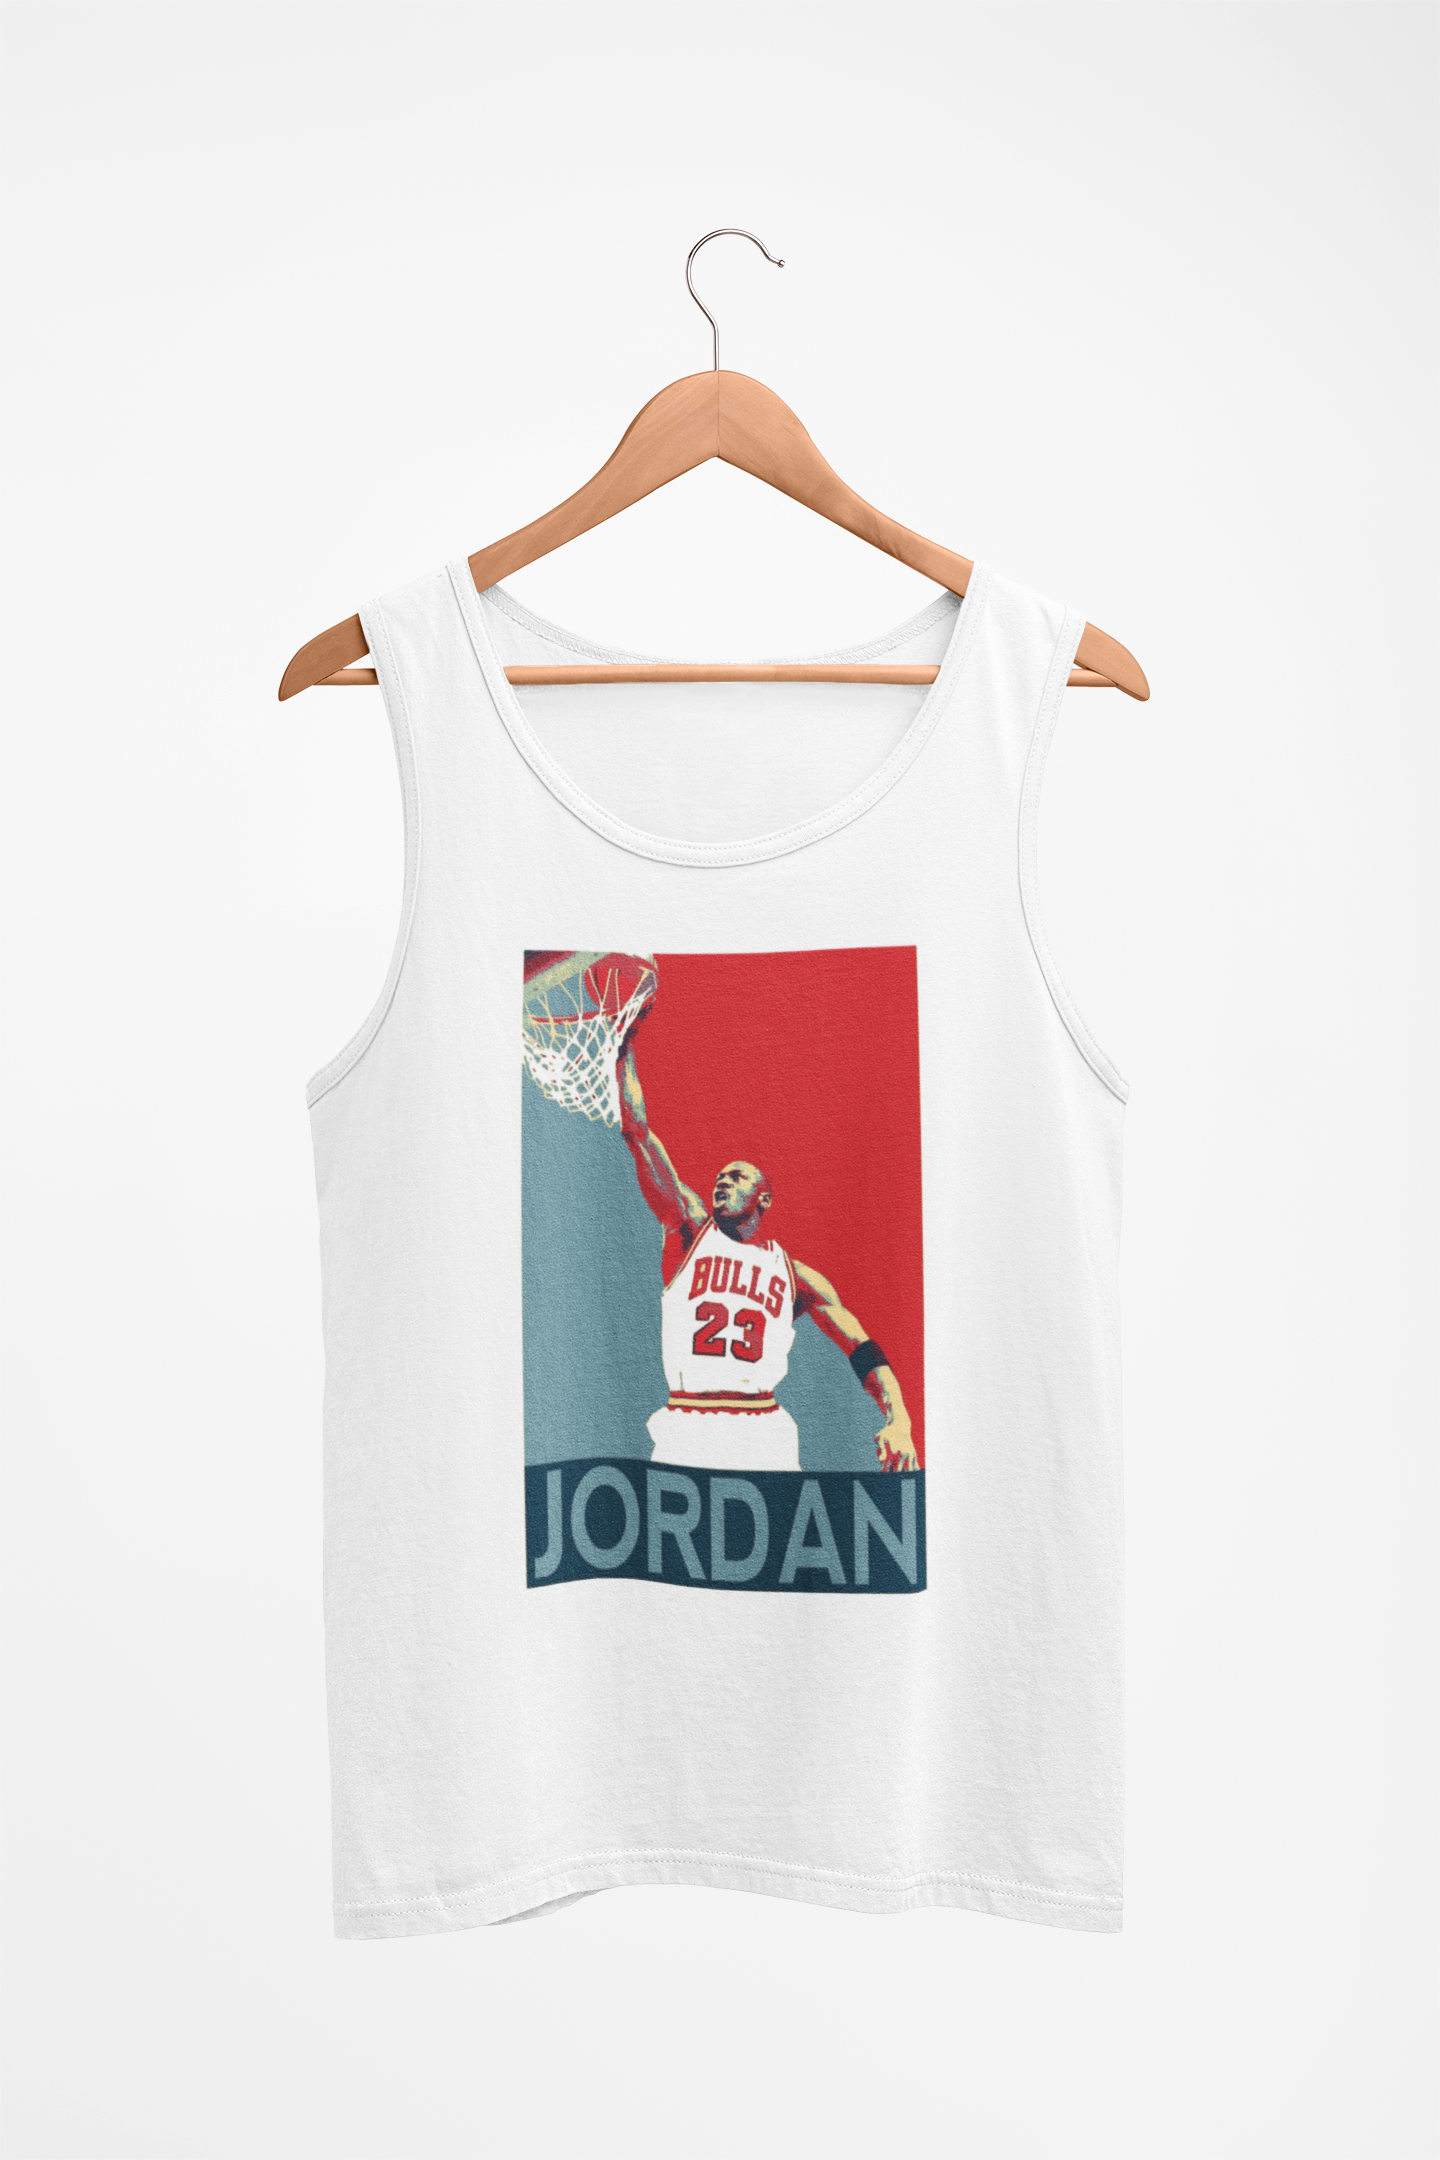 Michael Jordan "The Jordan" Graphic